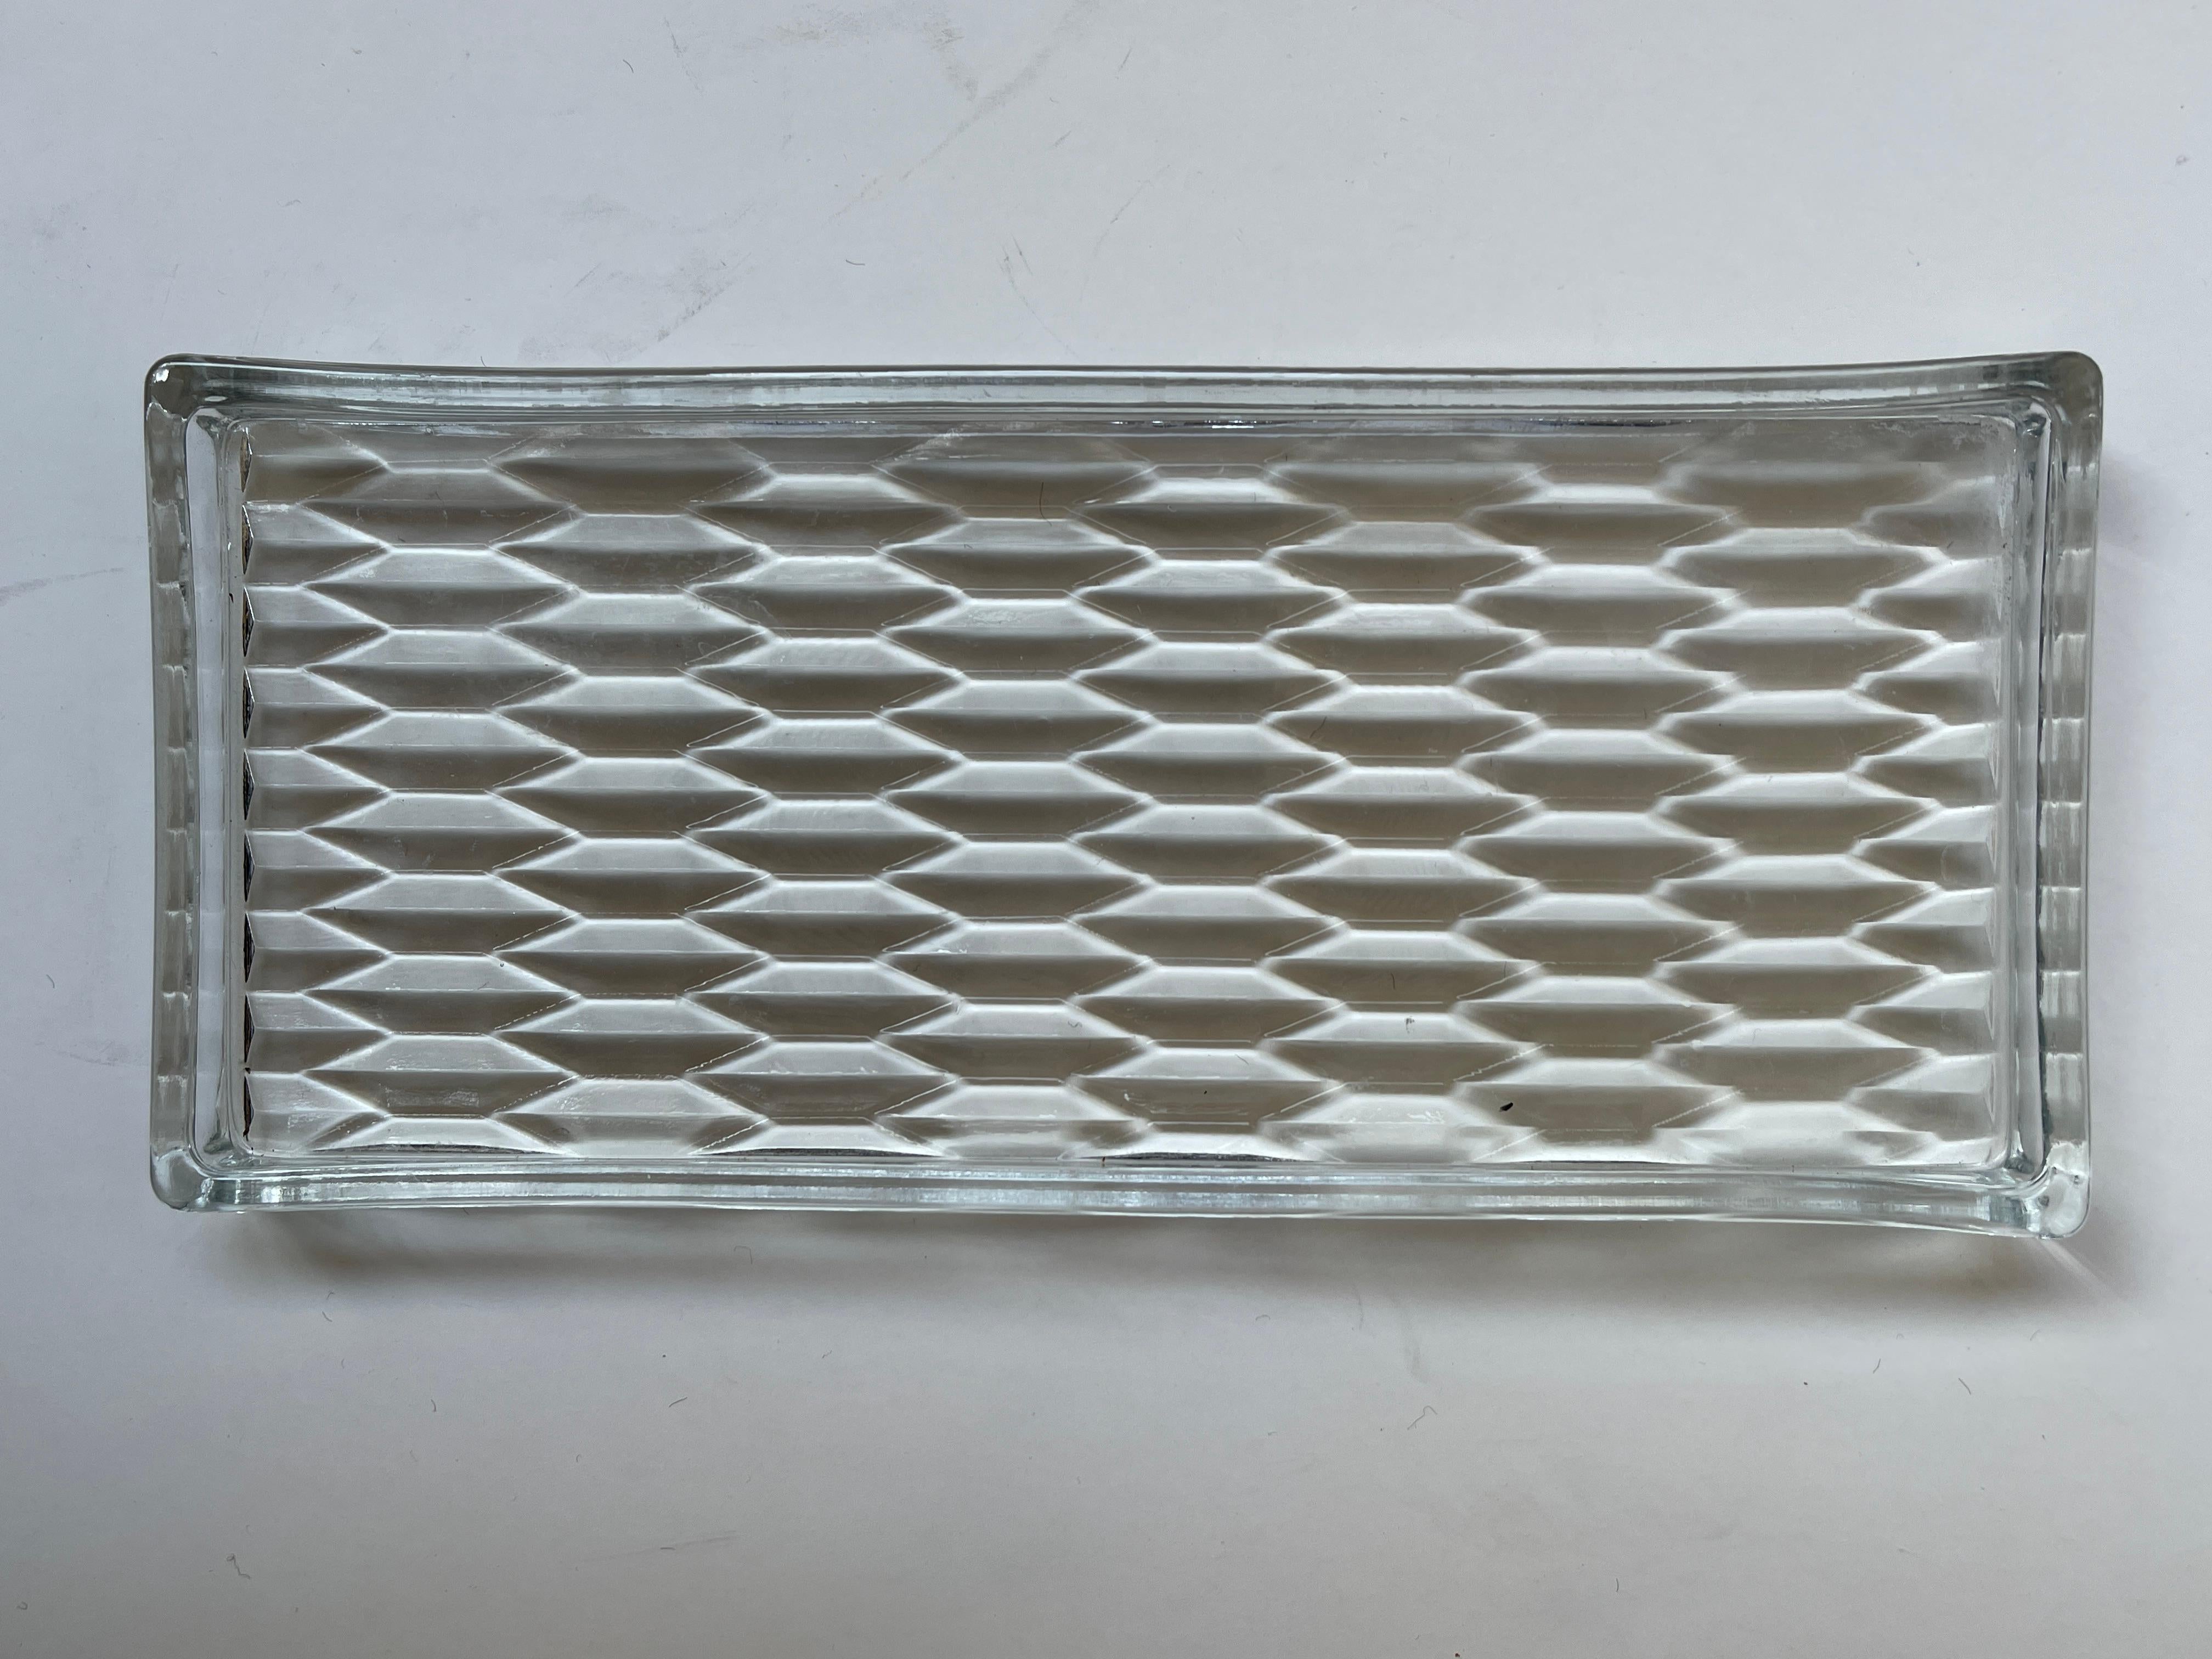 Plateau rectangulaire Art Déco en verre pressé à motifs géométriques, entouré d'un large rebord en verre. Utilisation idéale pour la vanité ou les articles de bar.
 Danemark, vers 1930-1940.